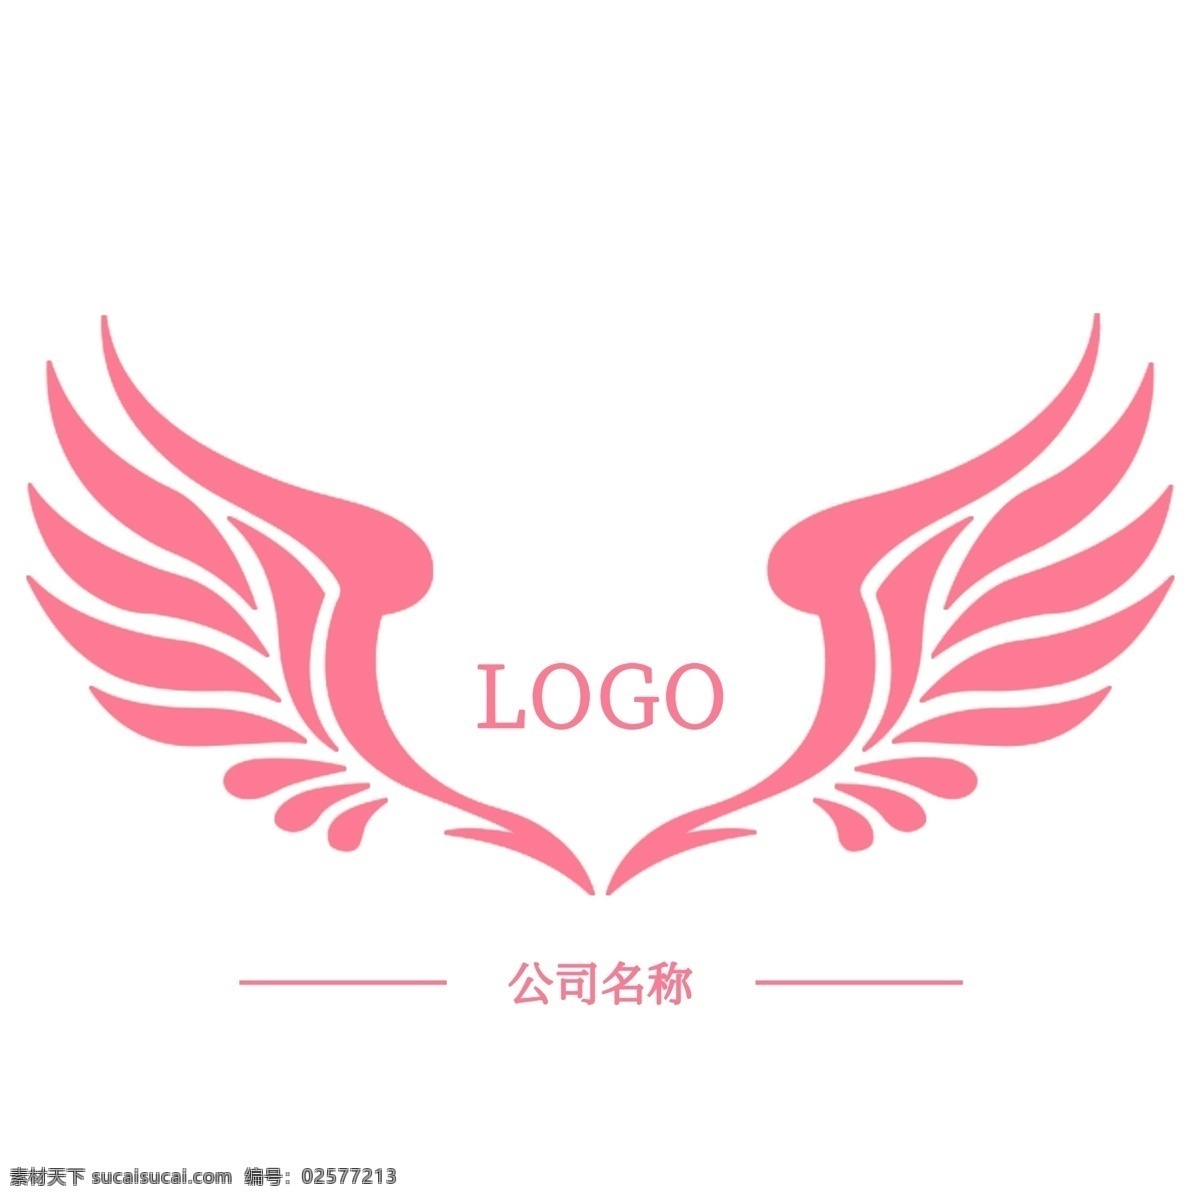 翅膀 logo 图标 粉色 白色 天使 标志 徽标 企业 黑色 可爱 矢量 分层